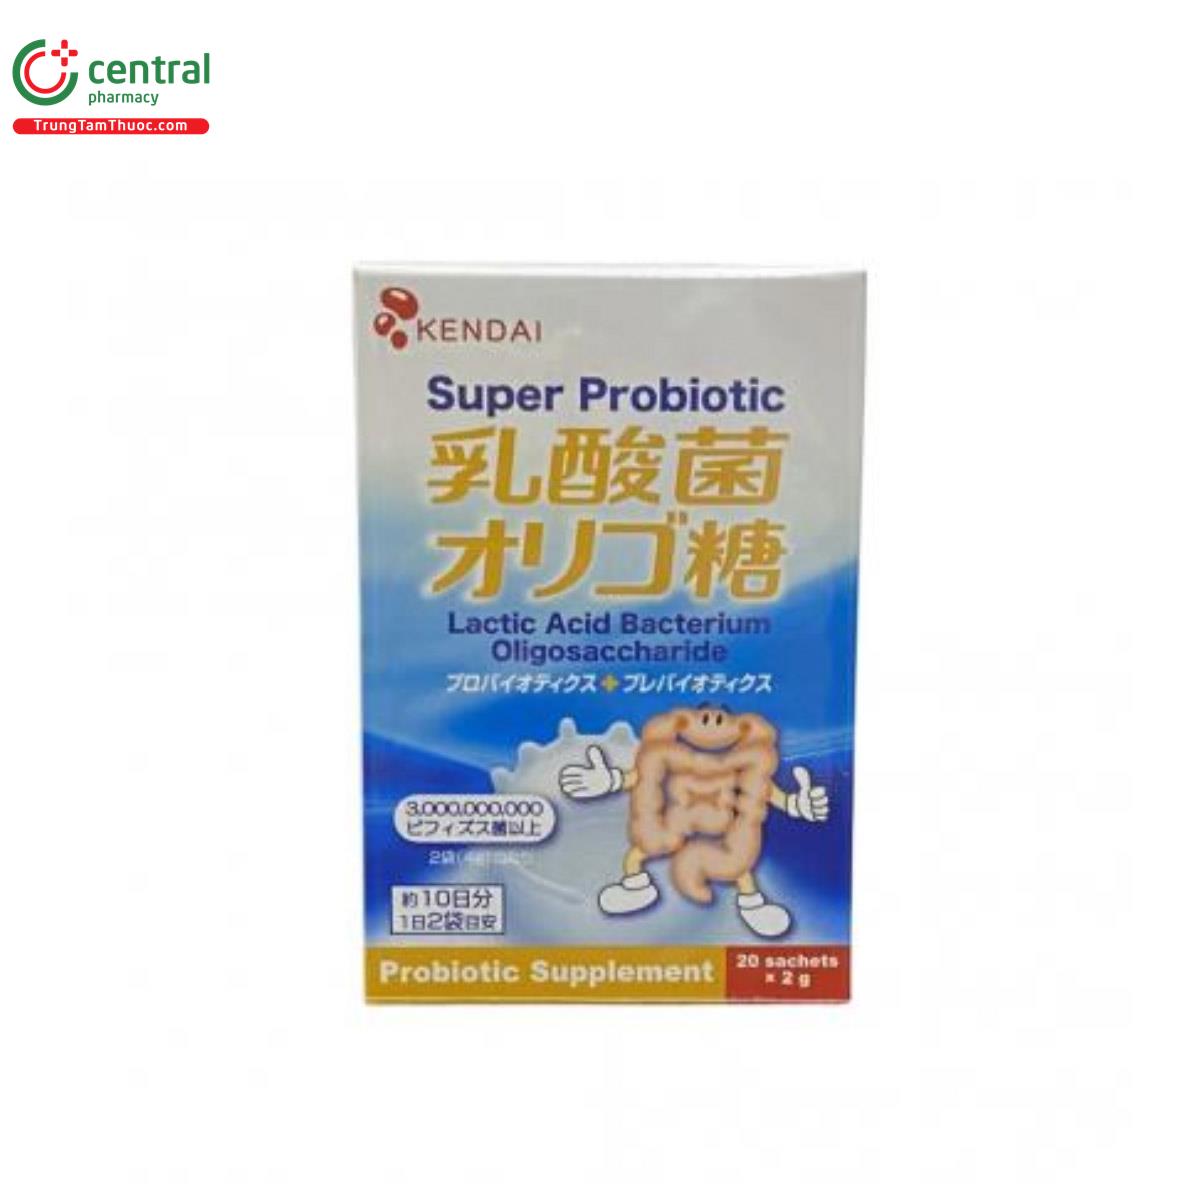 KENDAI Super Probiotic 